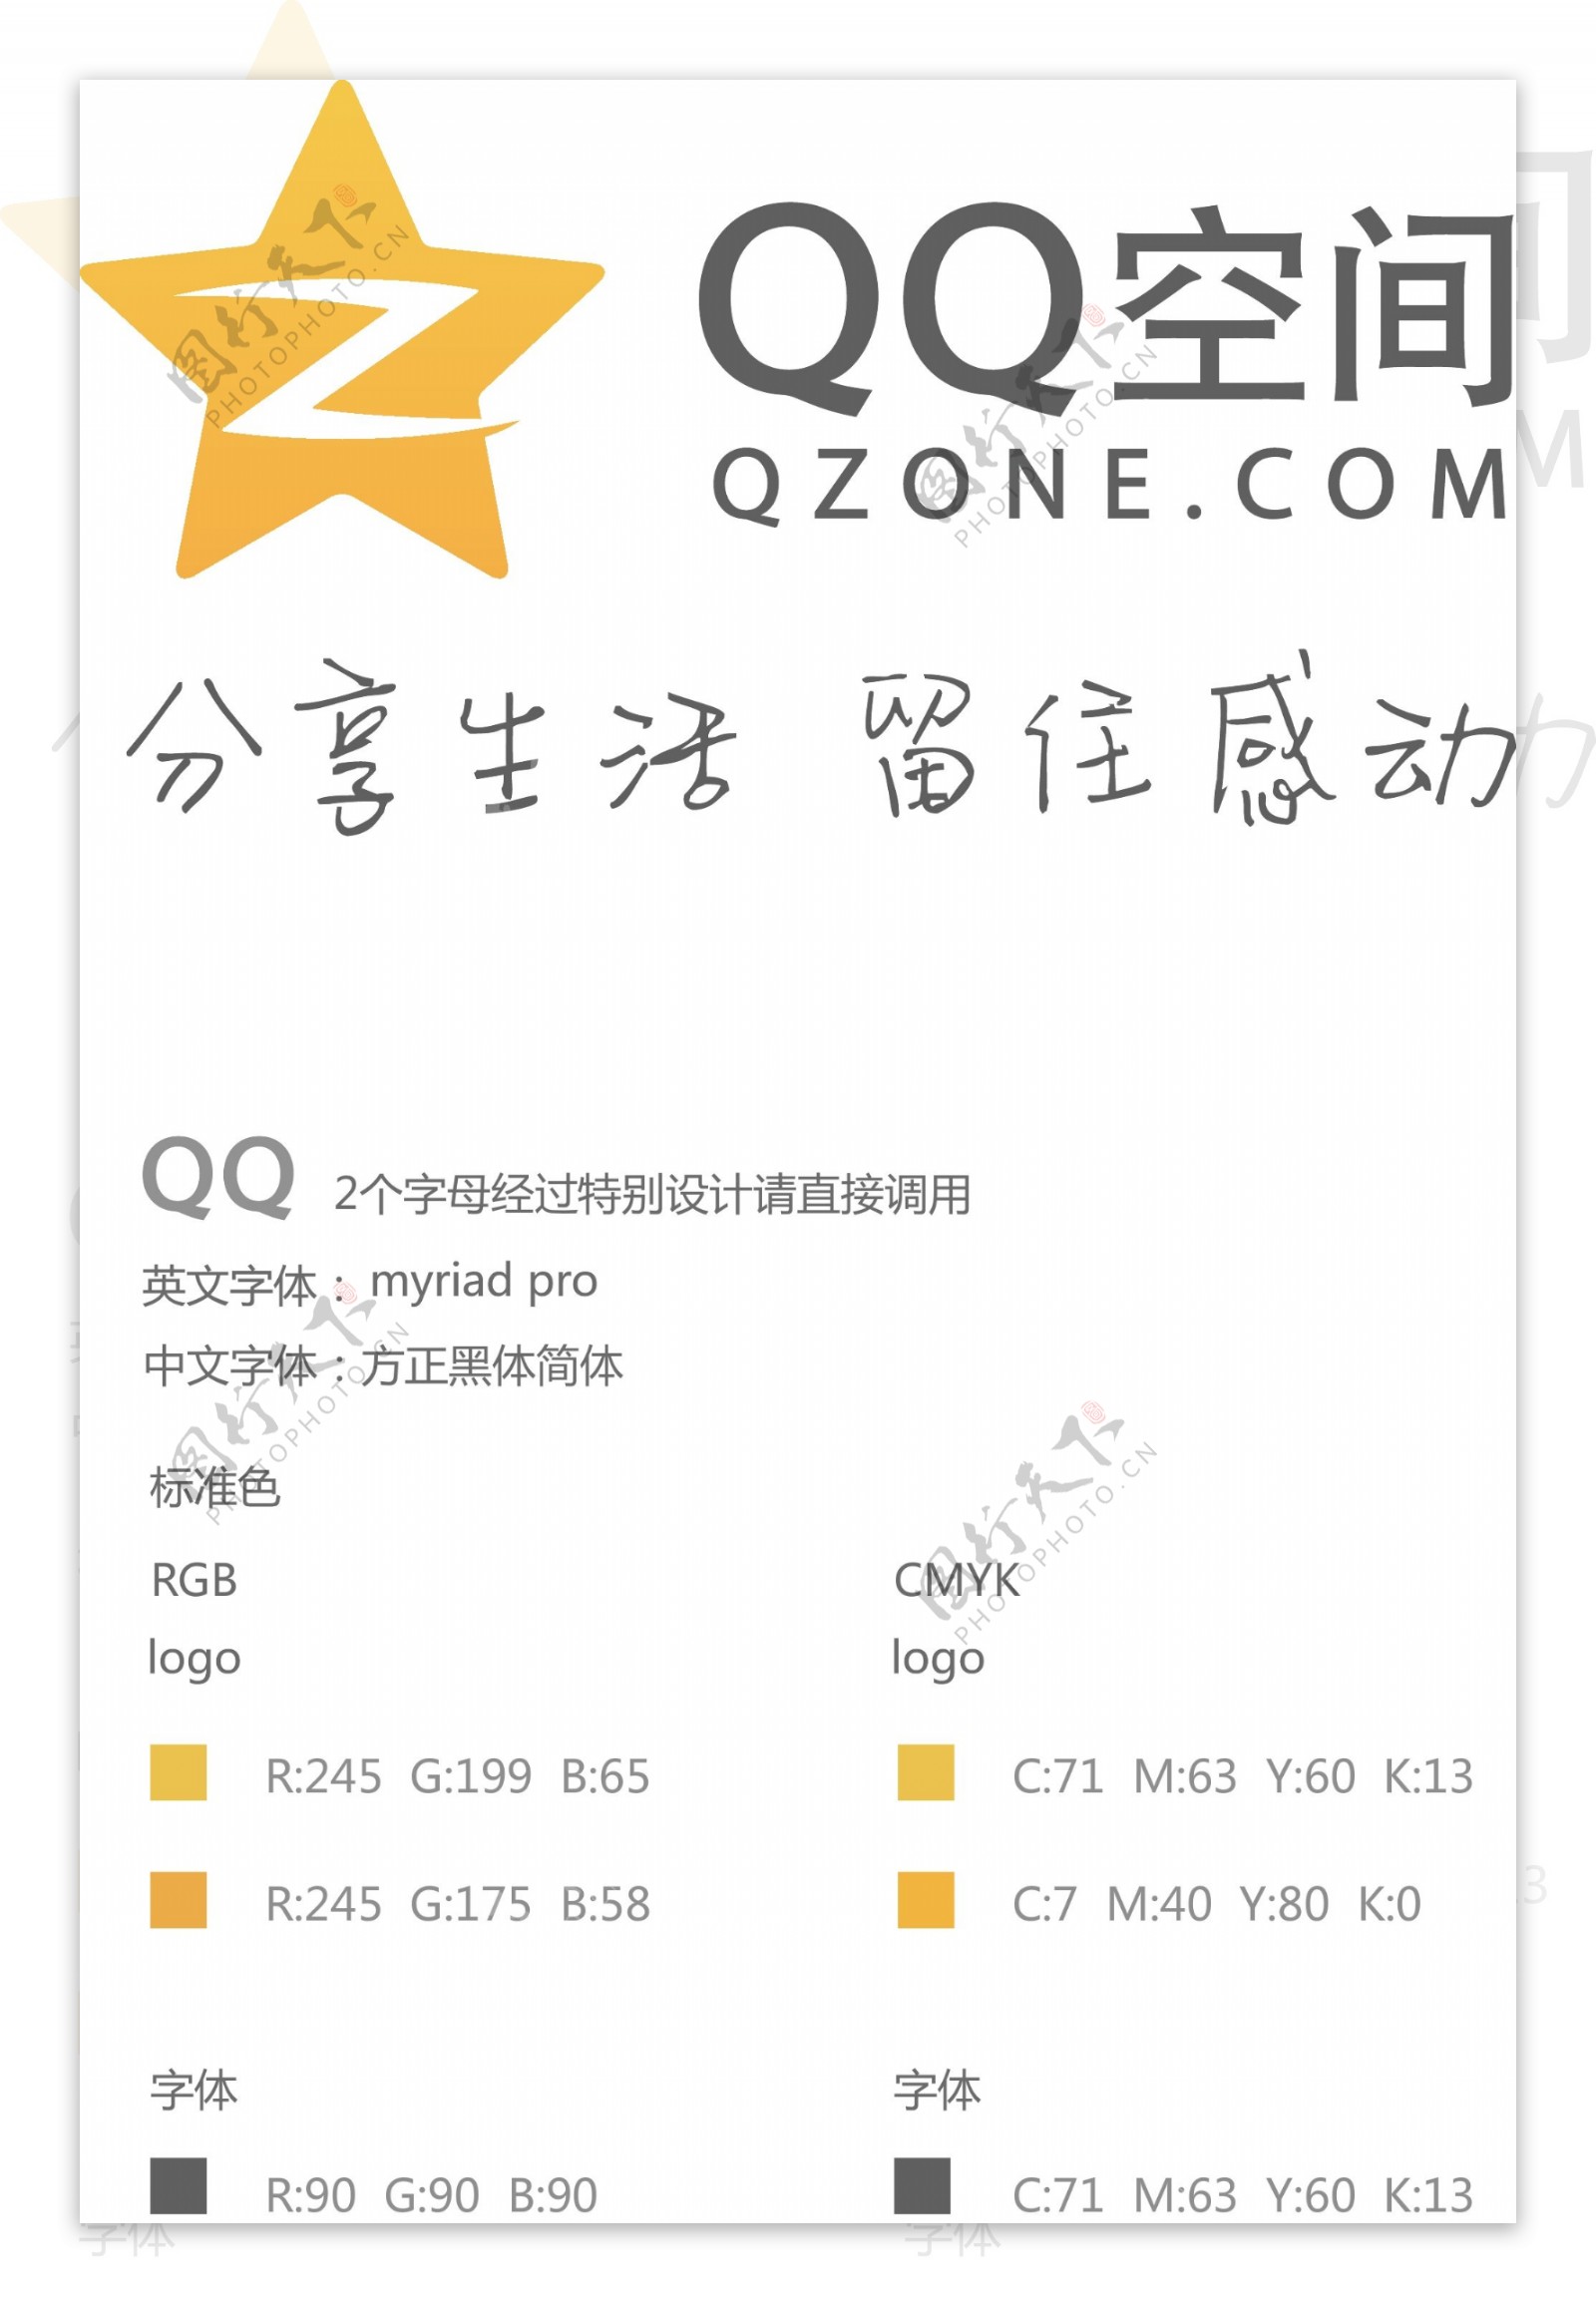 qq空间最新logo图片